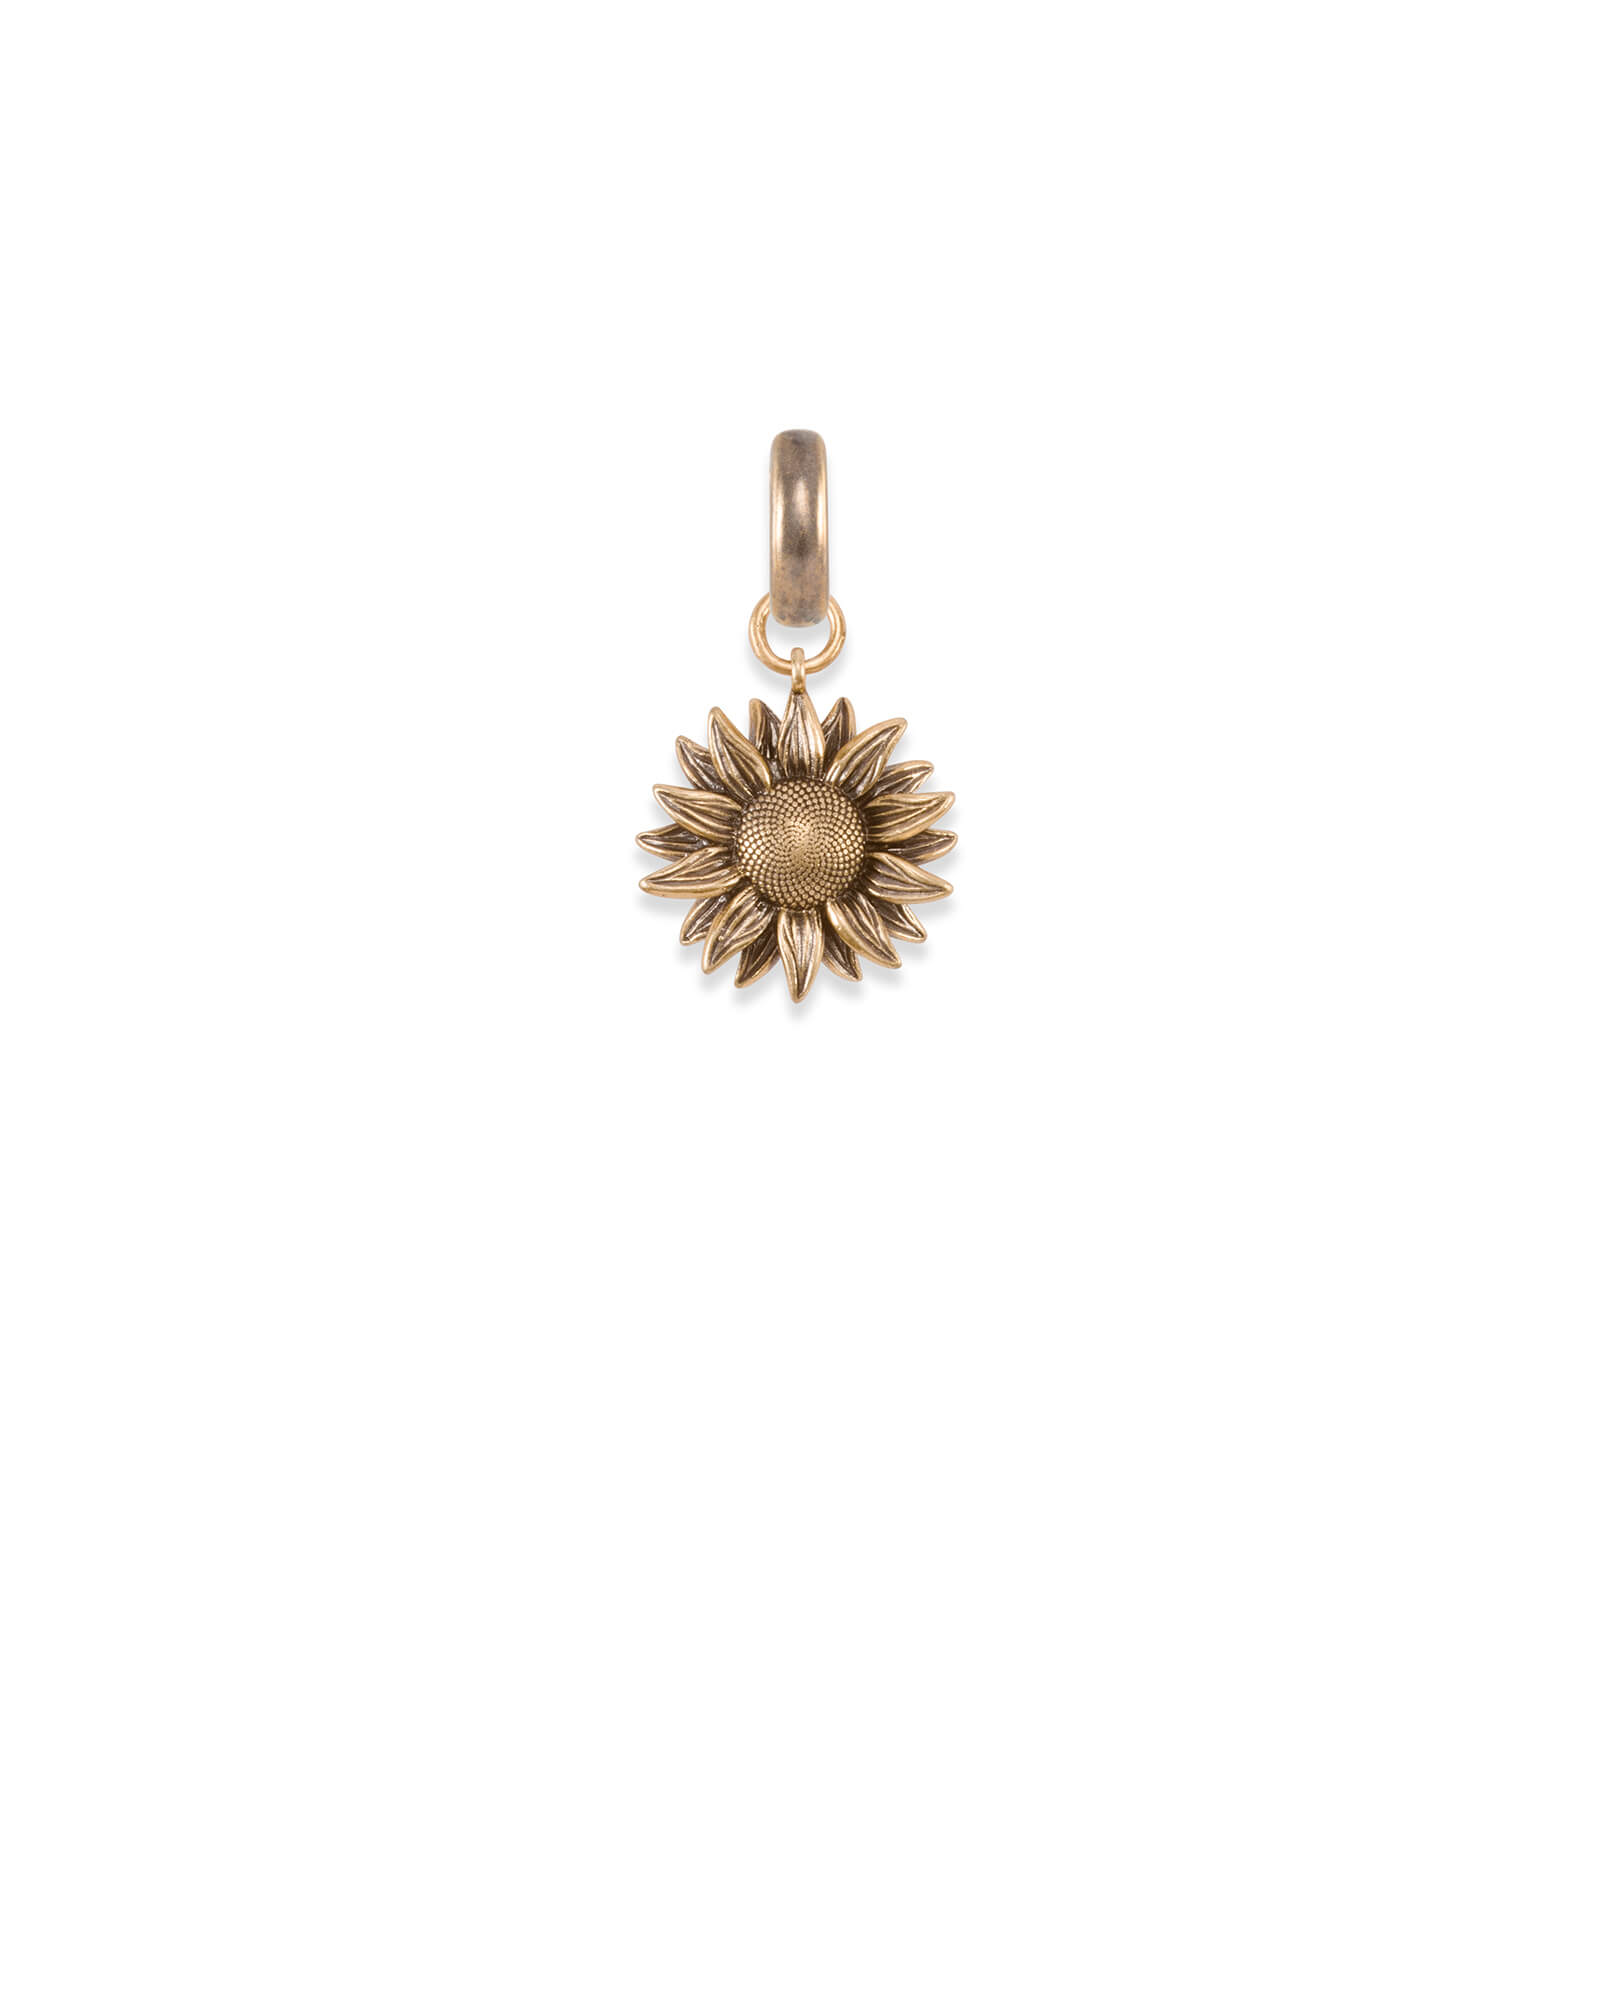 GiftJewelryShop Bronze Retro Style I Love Bingo Sun Flower Pendant Charm Necklaces